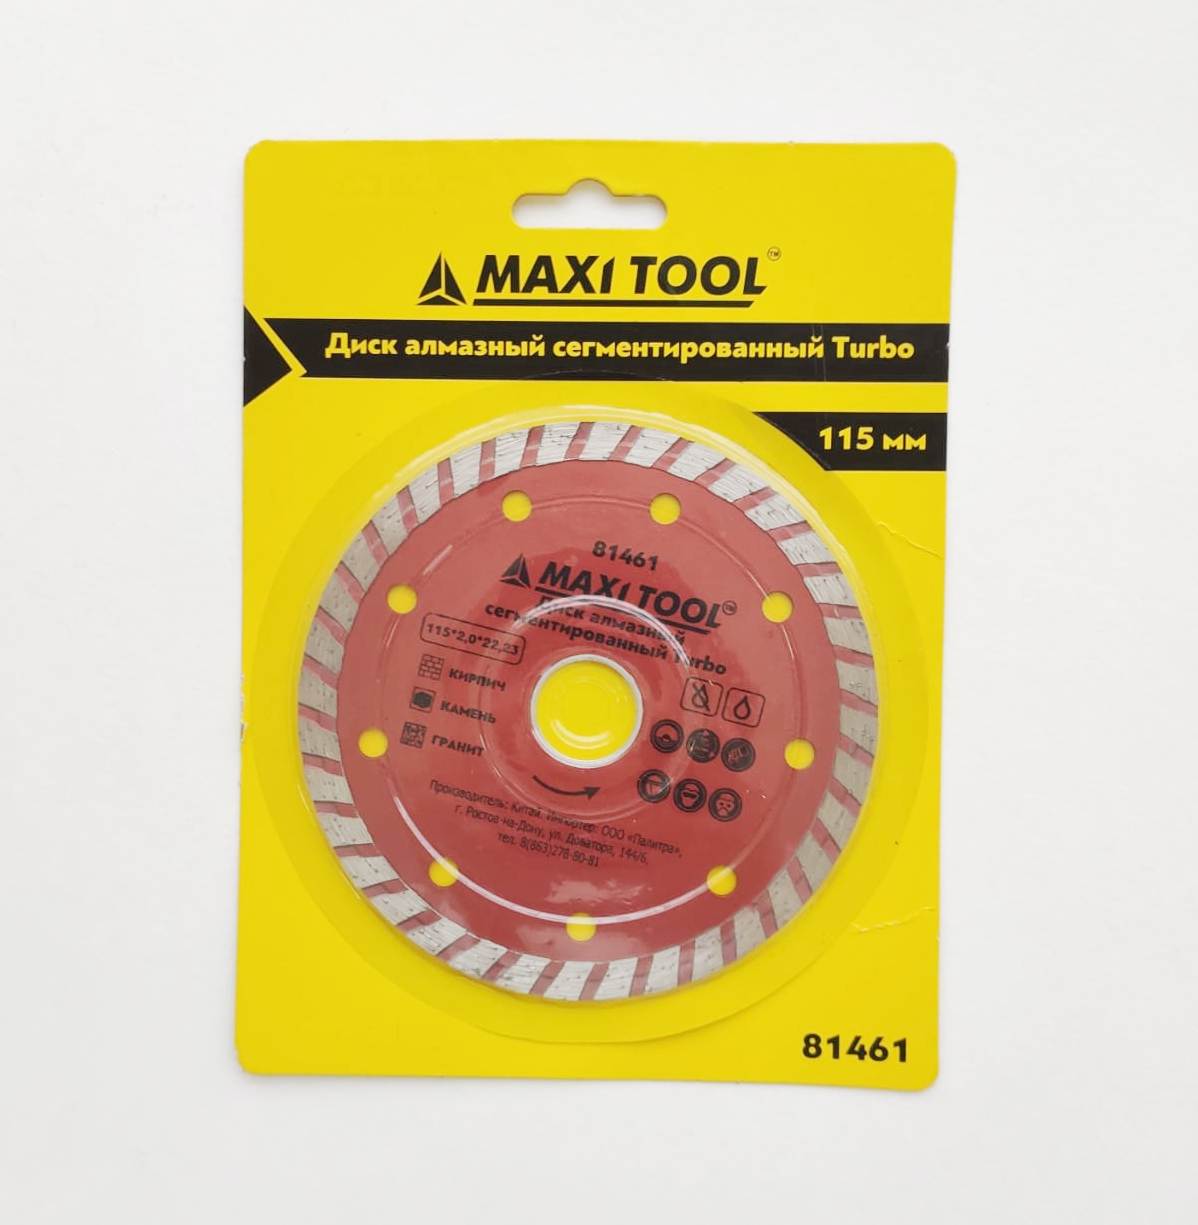 Диск алмазный сегментированный Turbo MaxiTool 81461